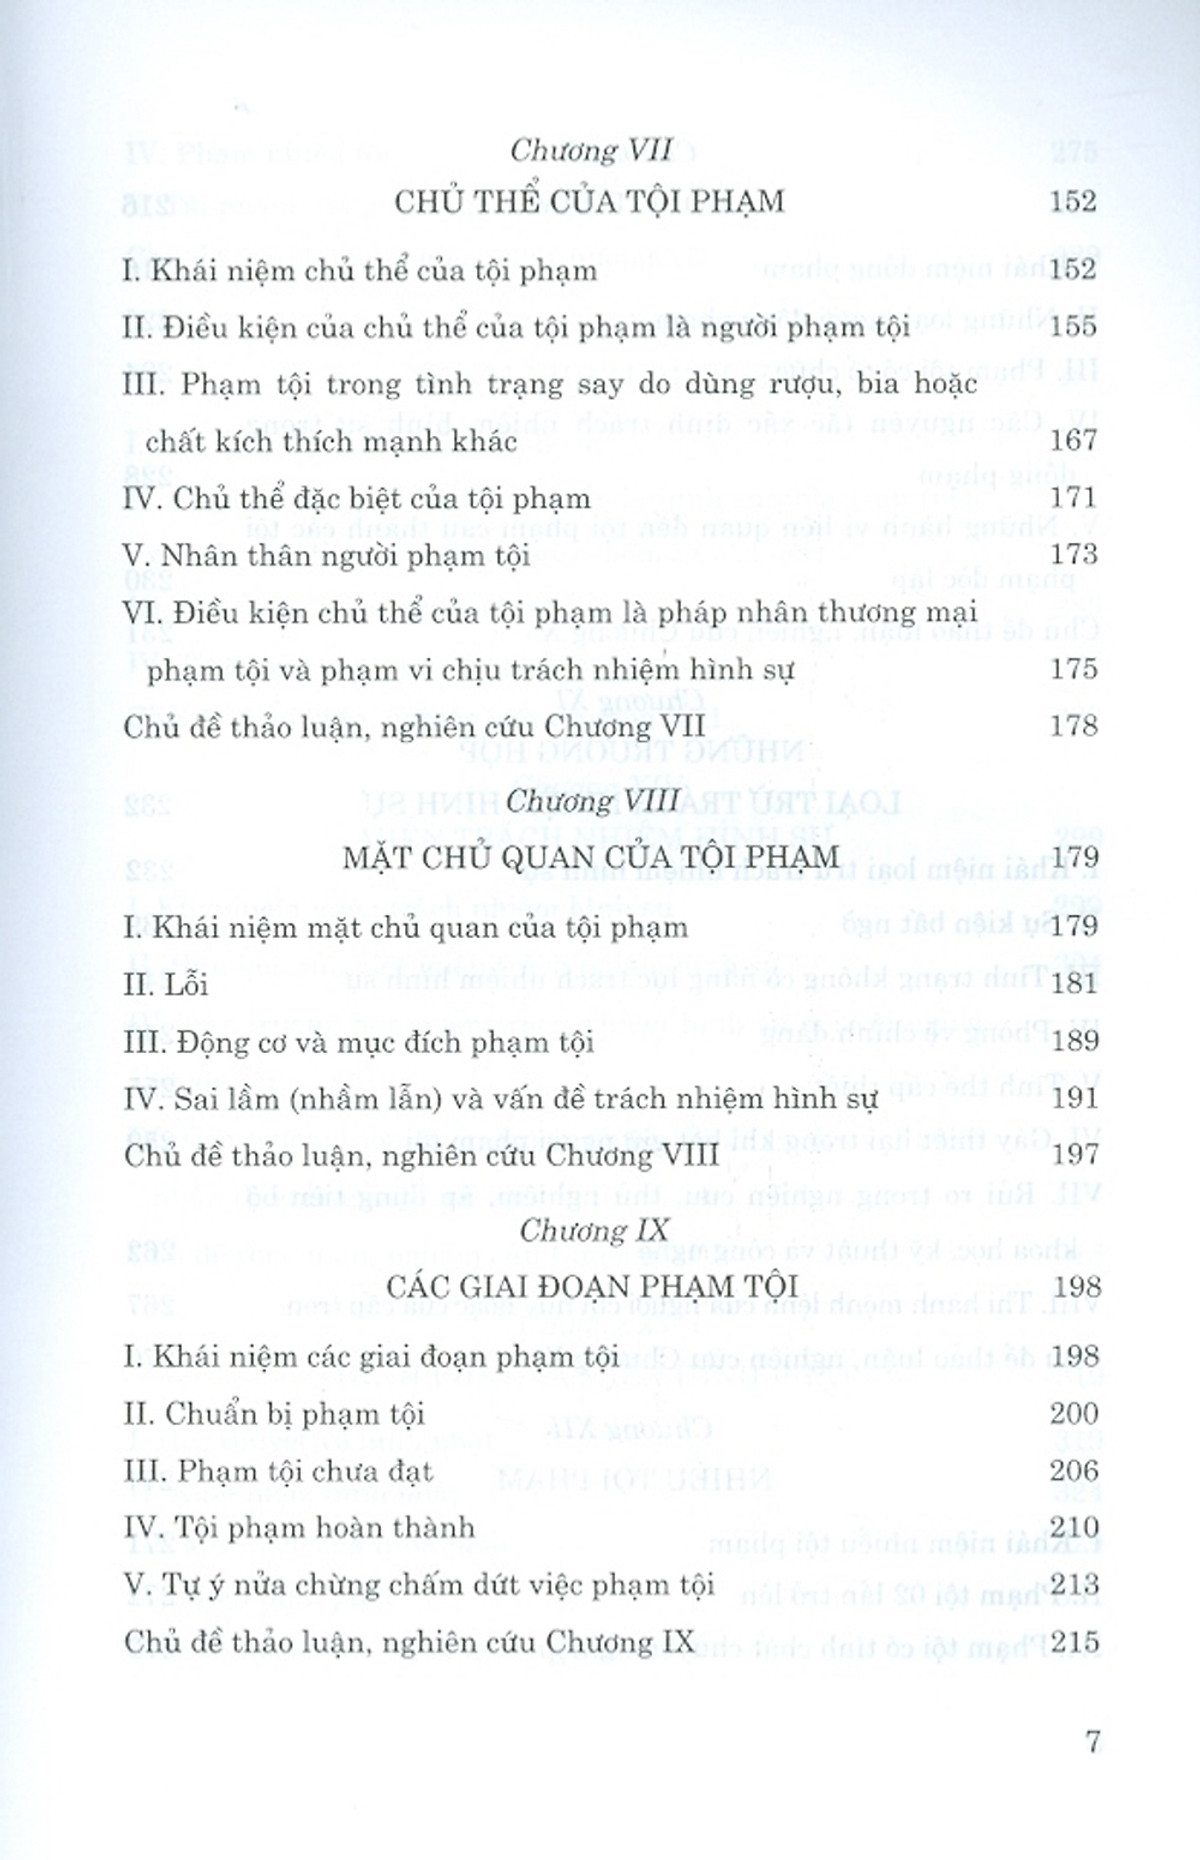 Tổng Quan Về Luật Hình Sự Việt Nam PDF